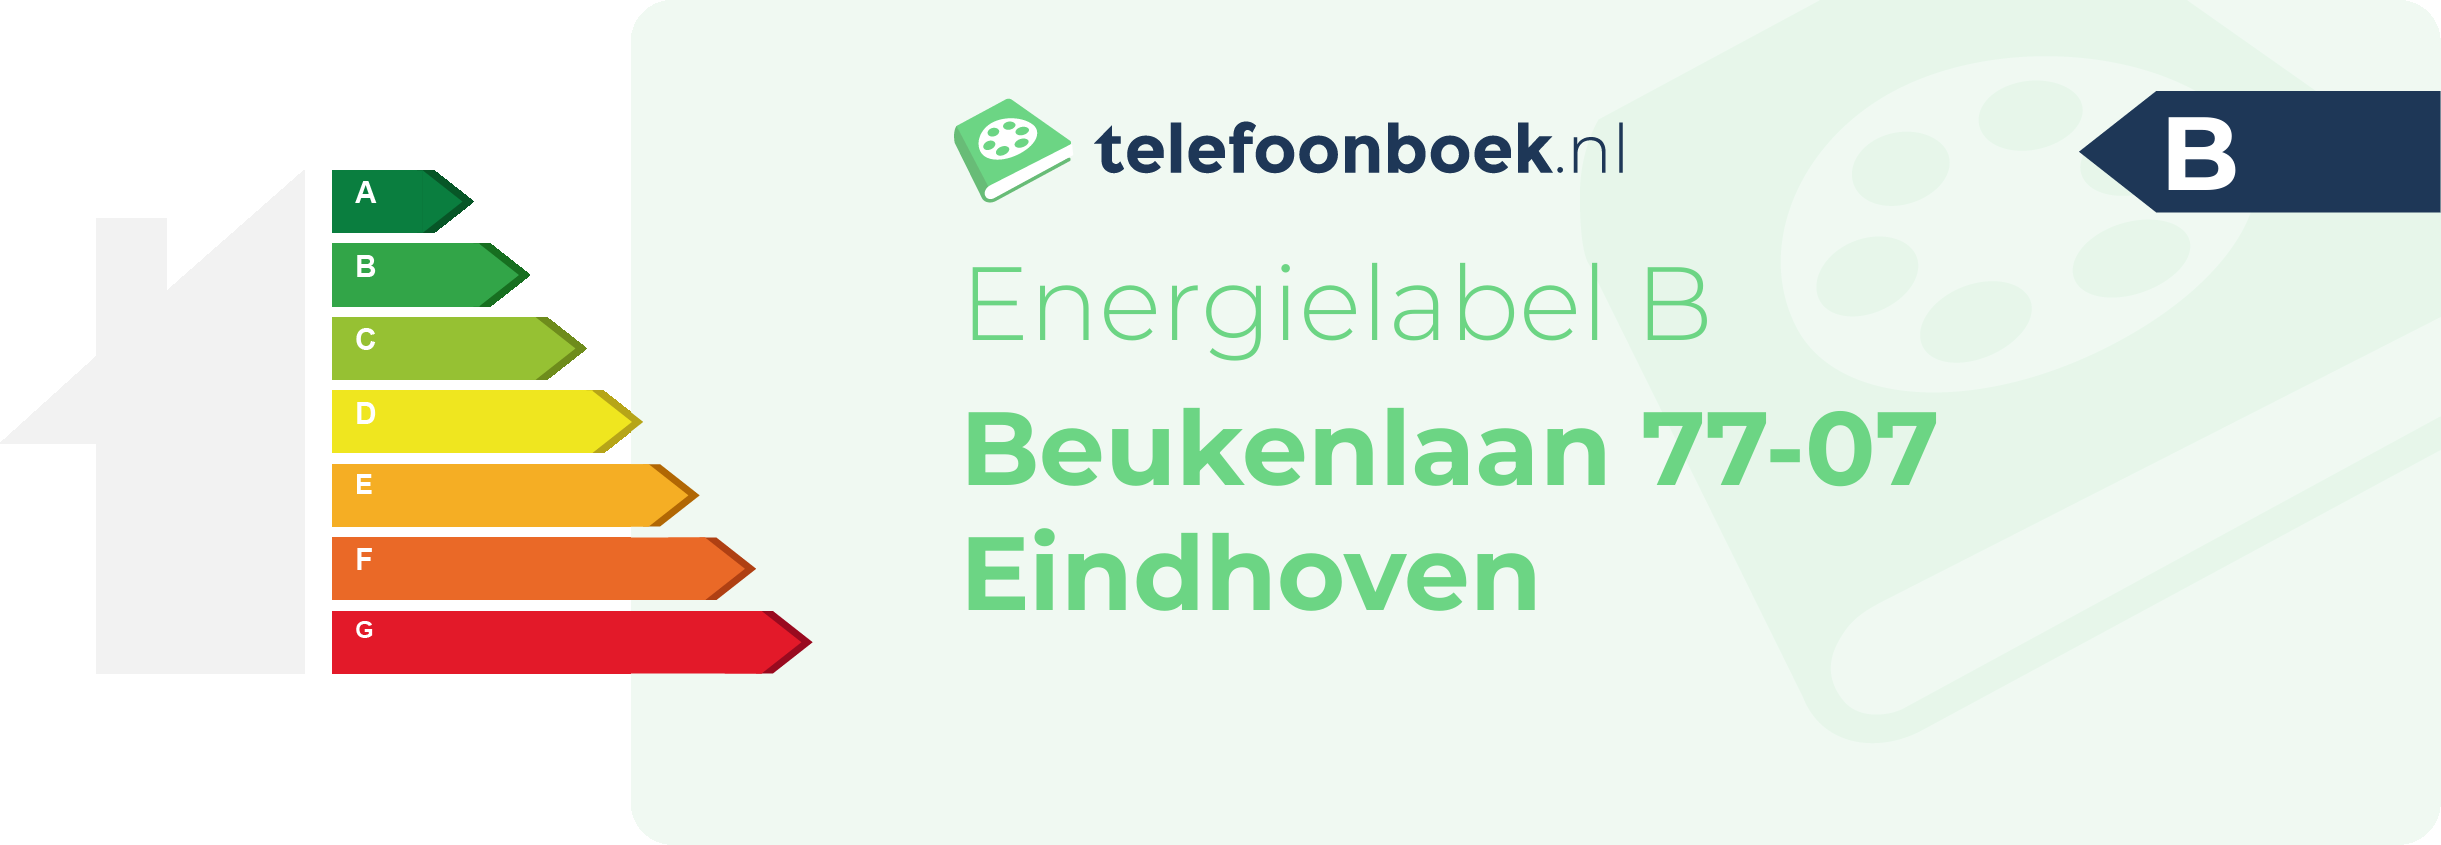 Energielabel Beukenlaan 77-07 Eindhoven